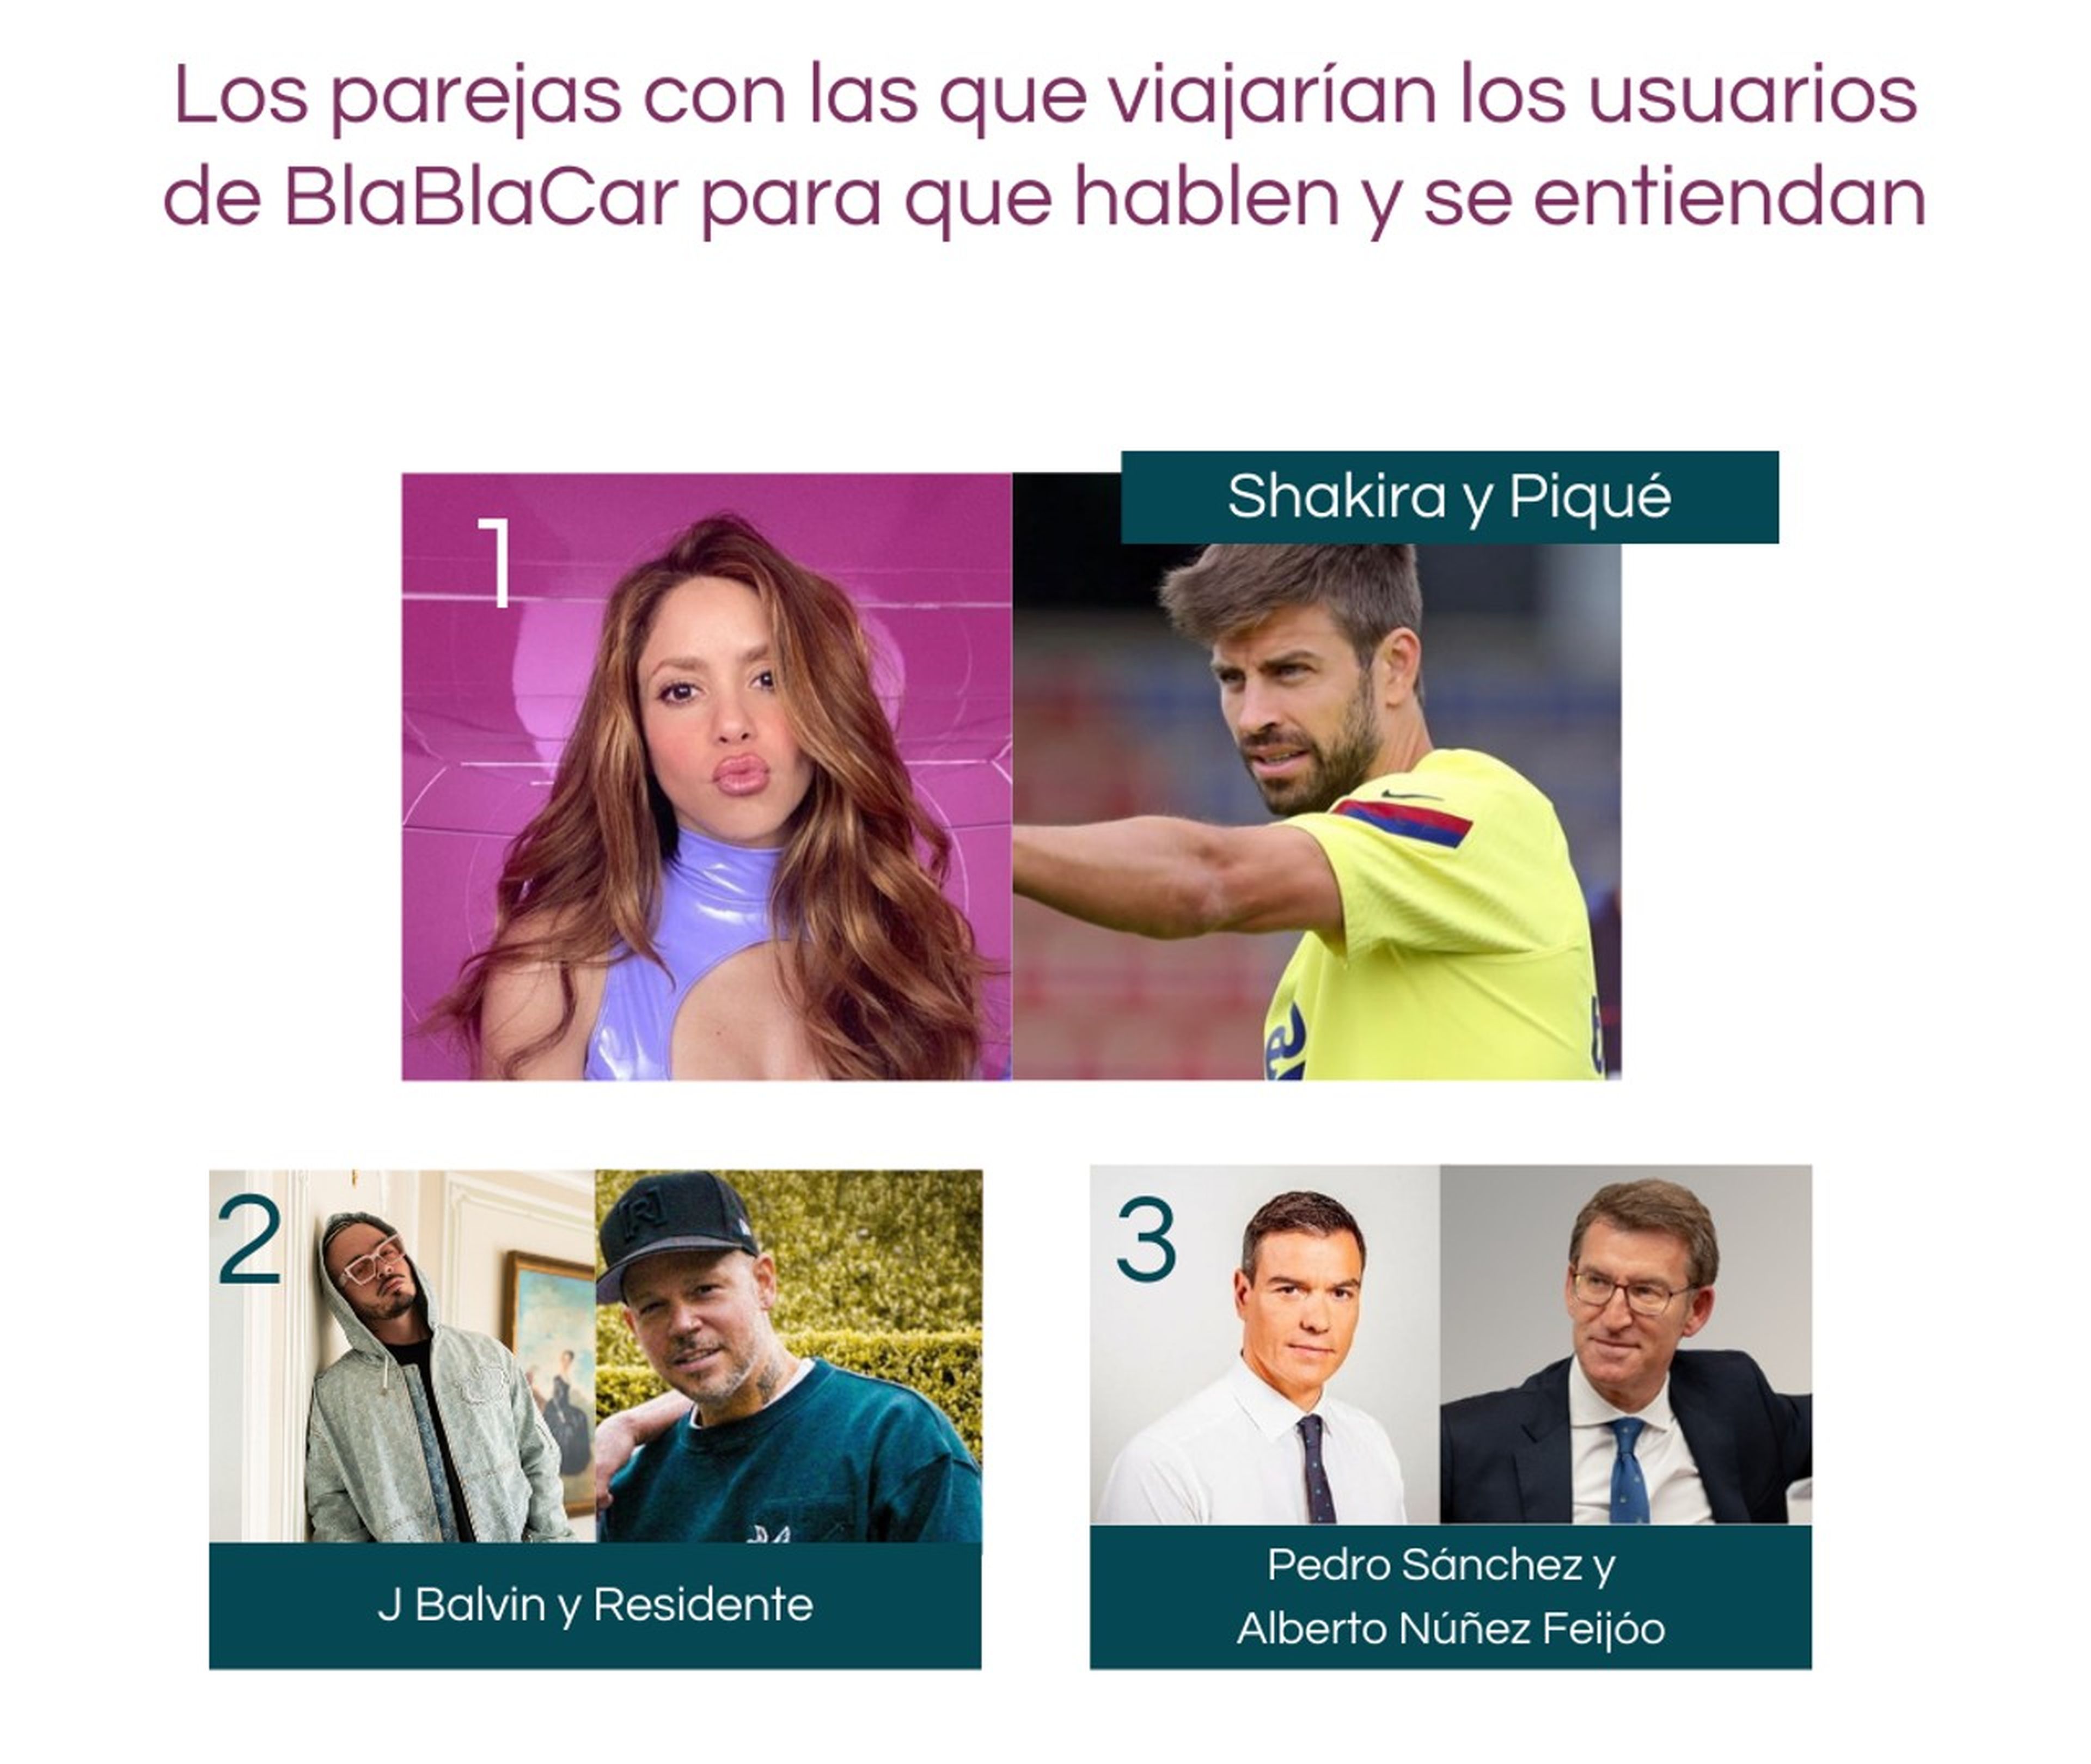 Rosalía, Mario Casas y Aitana, los favoritos de los usuarios de BlaBlaCar